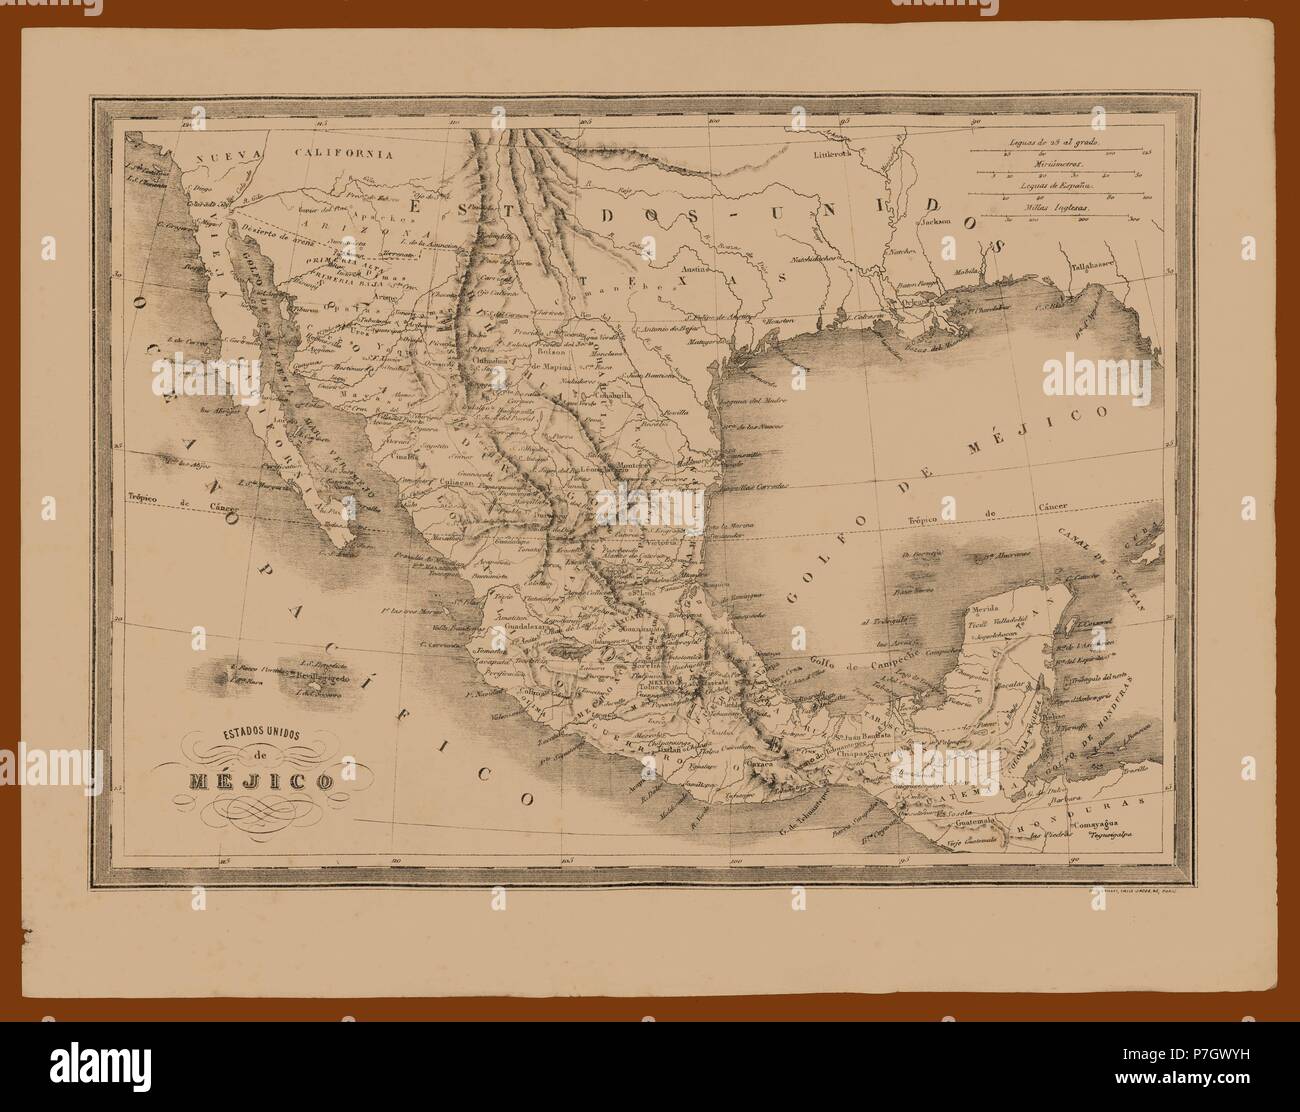 Mapa de los Estados Unidos de Méjico. Grabado de 1870. Stock Photo